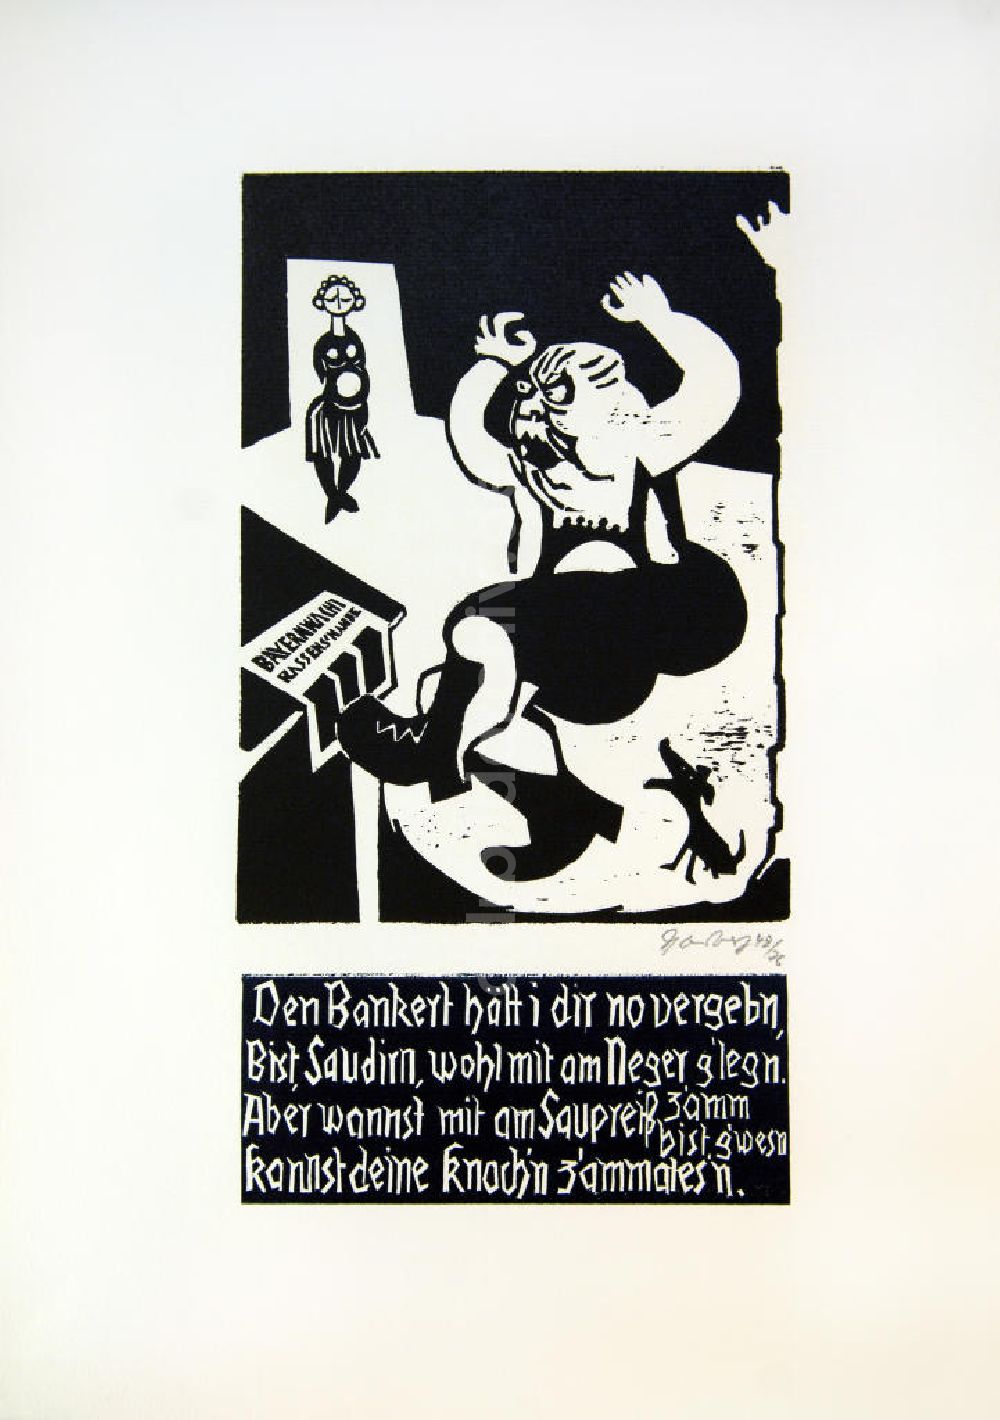 Berlin: Grafik von Herbert Sandberg Der Bankert aus dem Jahr 1948